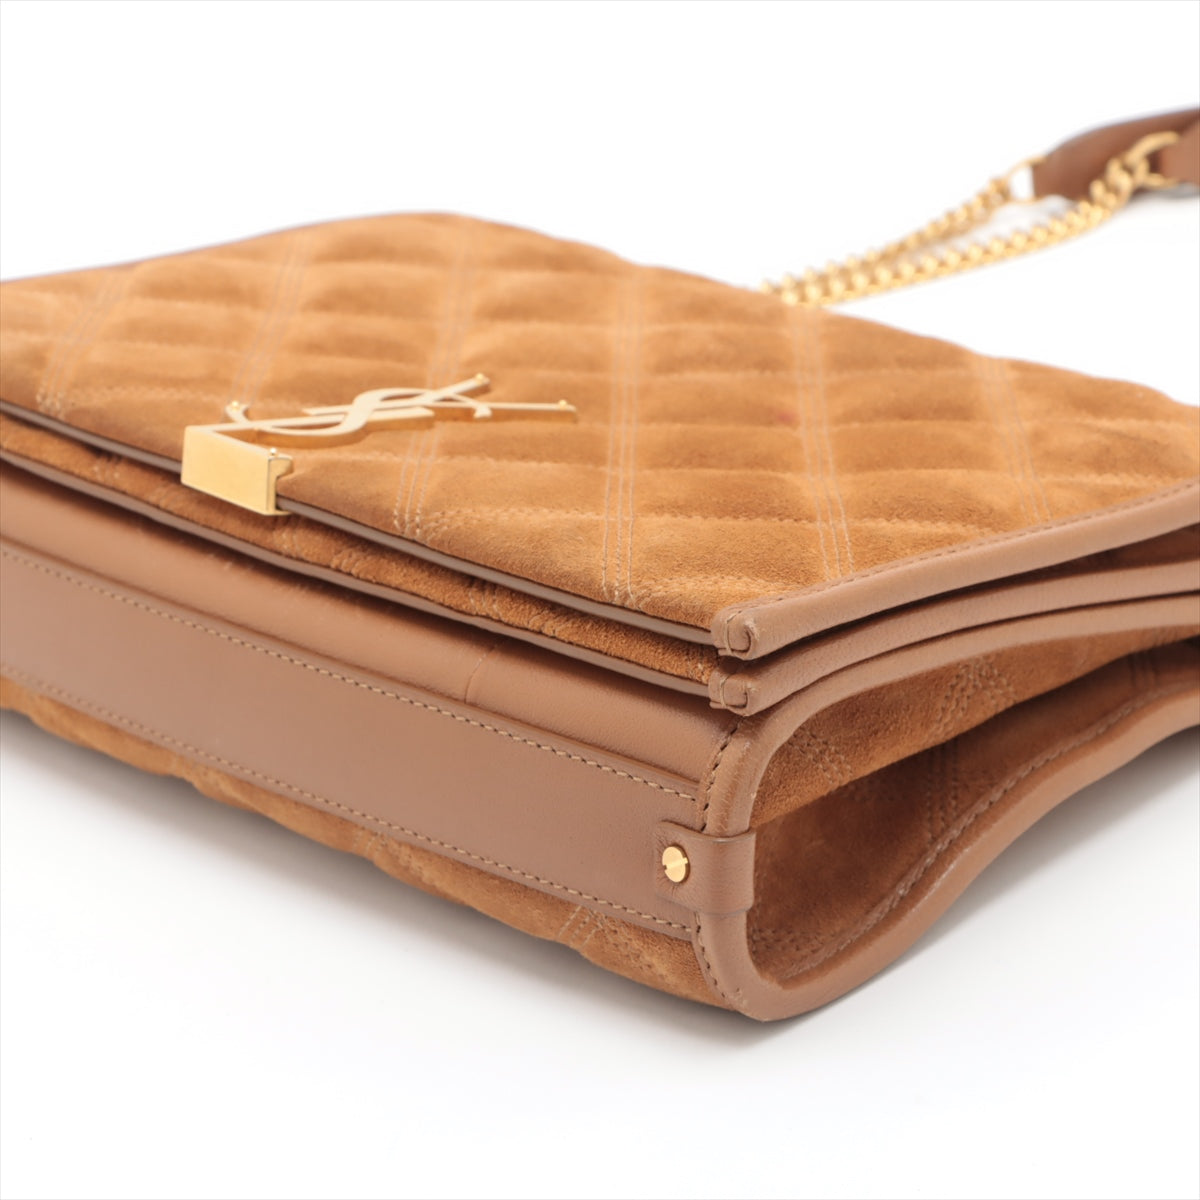 Saint Laurent Paris Leather & suede Chain shoulder bag Brown 629246